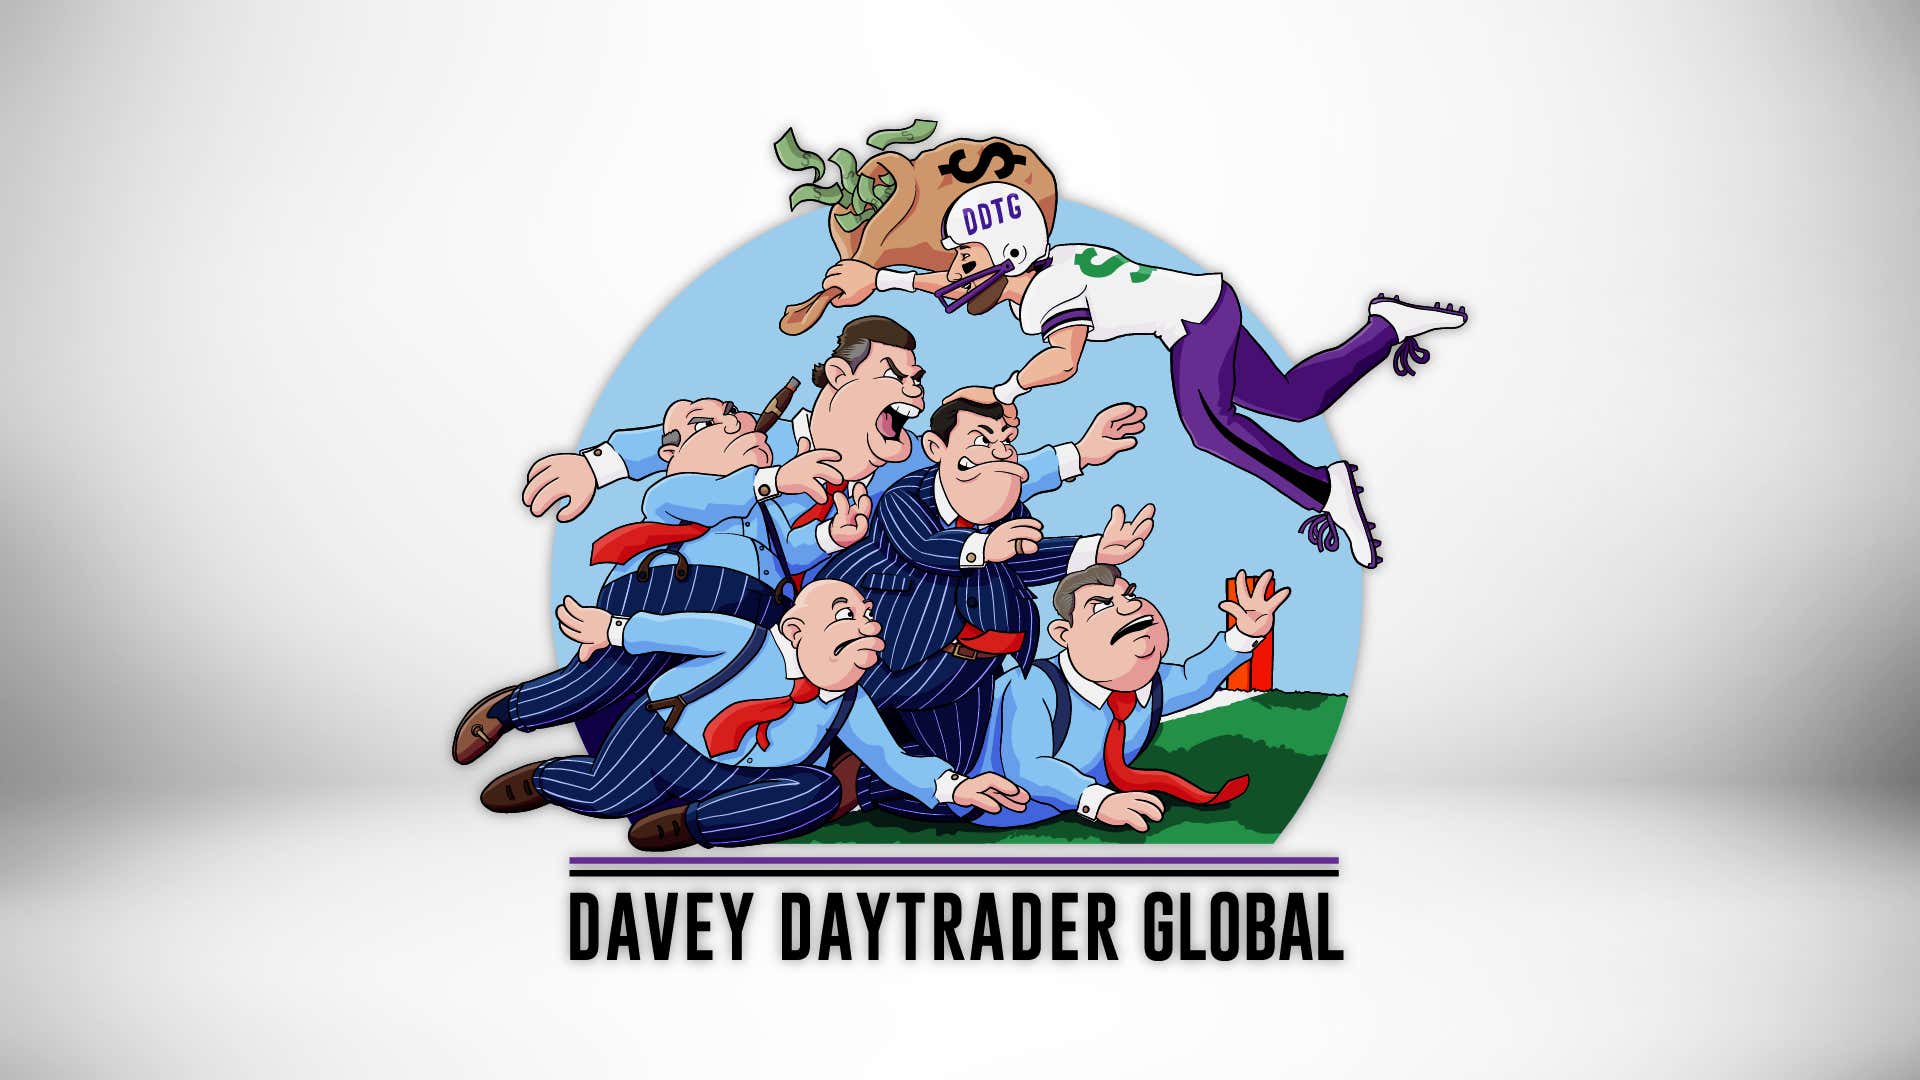 Davey Day Trader – July 24, 2020